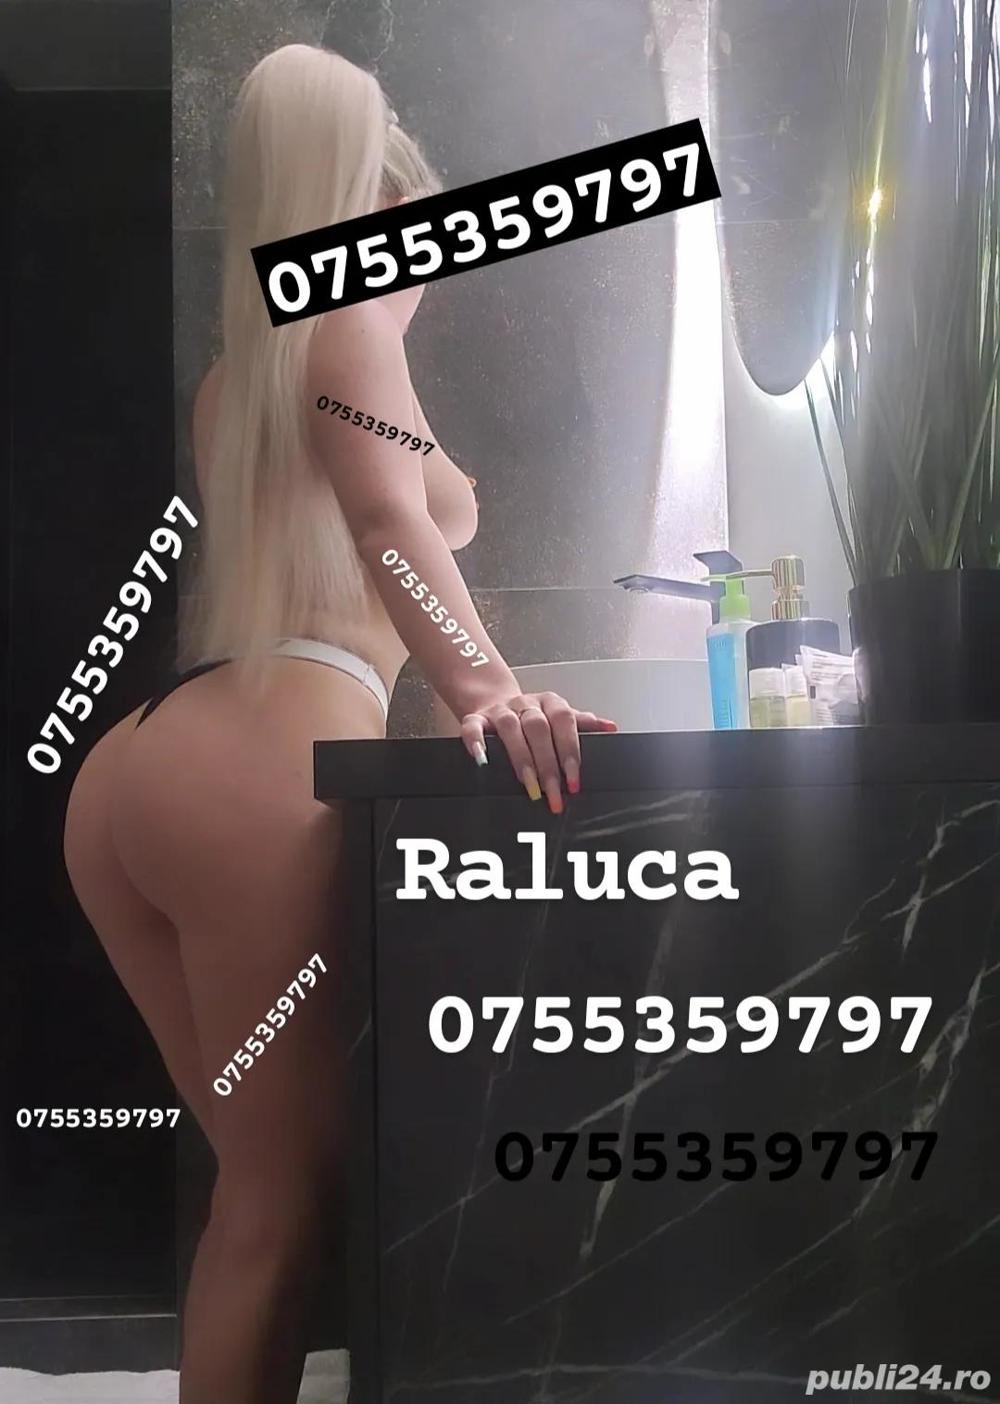 Raluca Piercing intim  - imagine 6